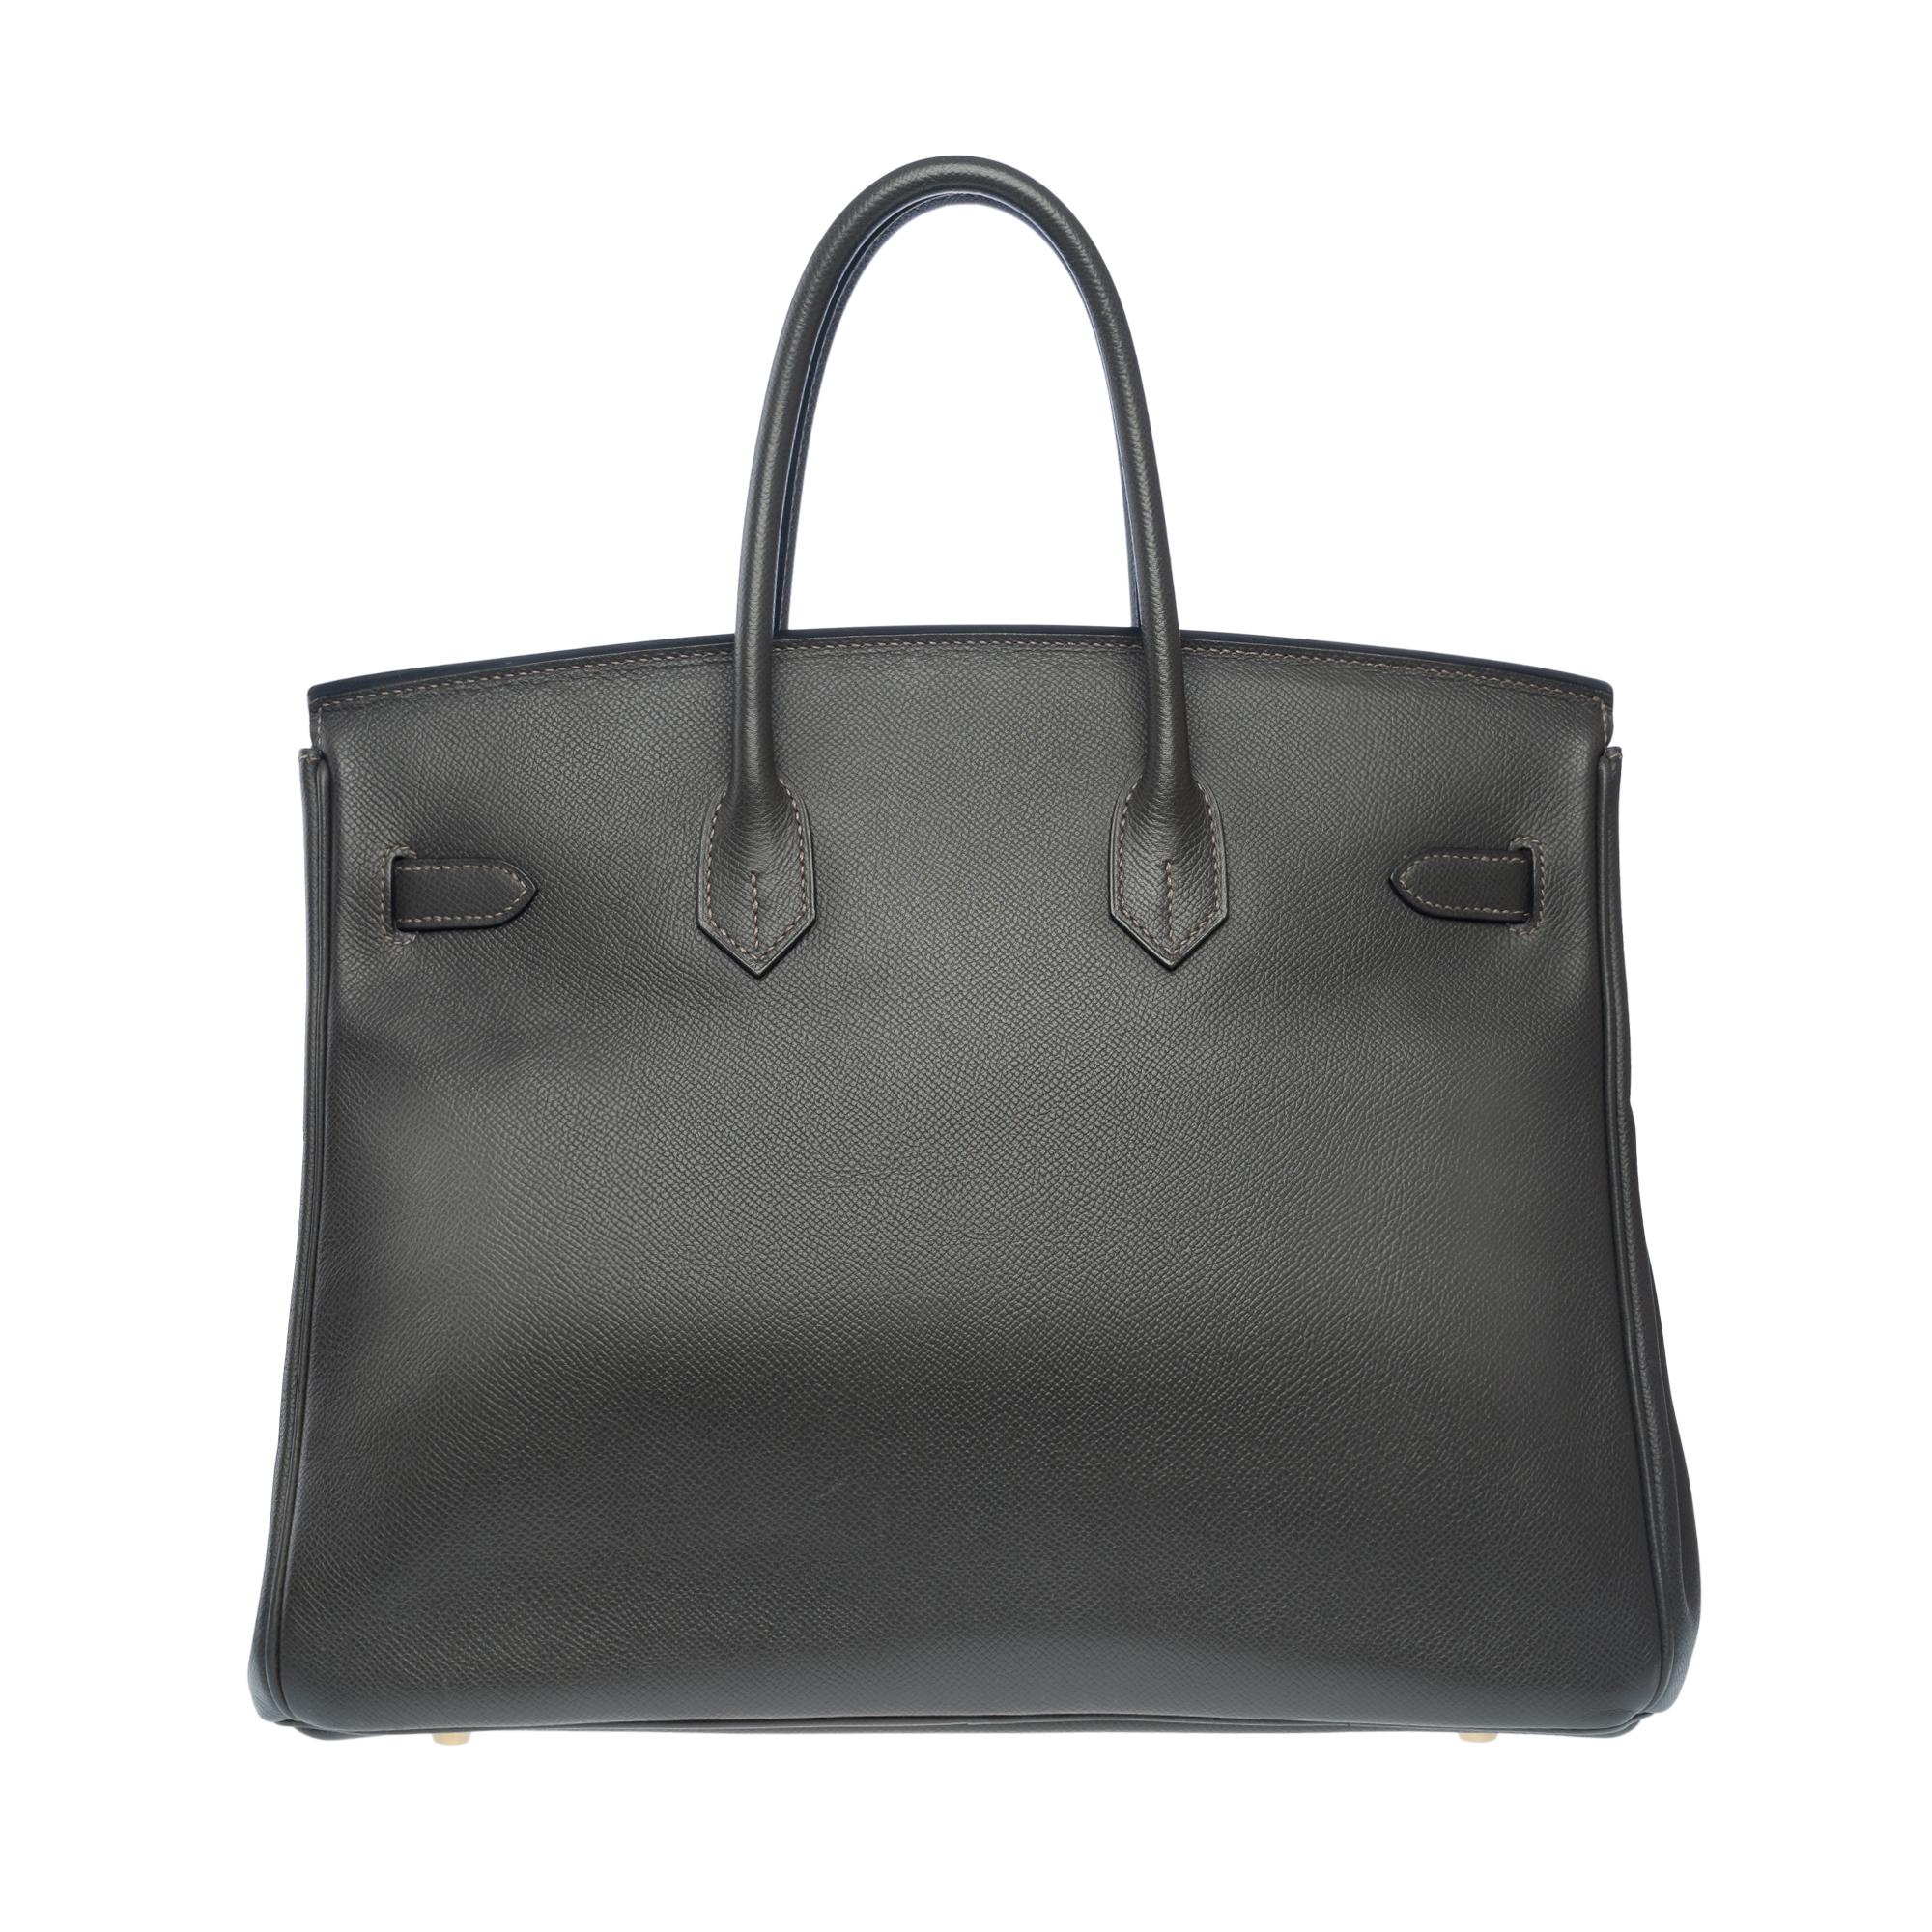 Erstaunliche Hermès Birkin 35 Handtasche in Gray Graphite Epsom Leder, GHW für Damen oder Herren im Angebot